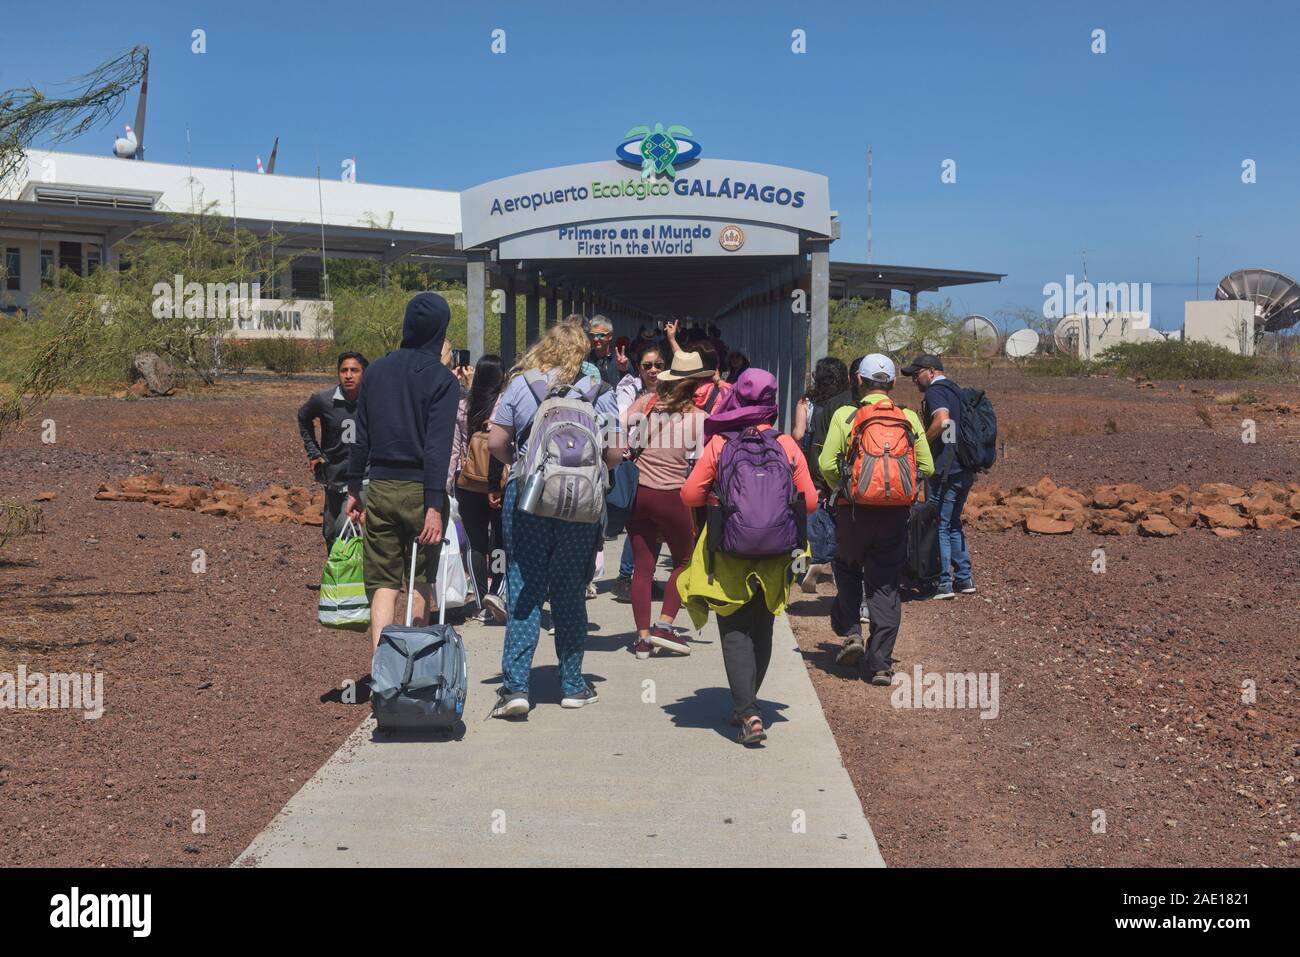 Los turistas que llegan en el aeropuerto Ecológico de Galápagos, las Islas Galápagos, Ecuador Foto de stock